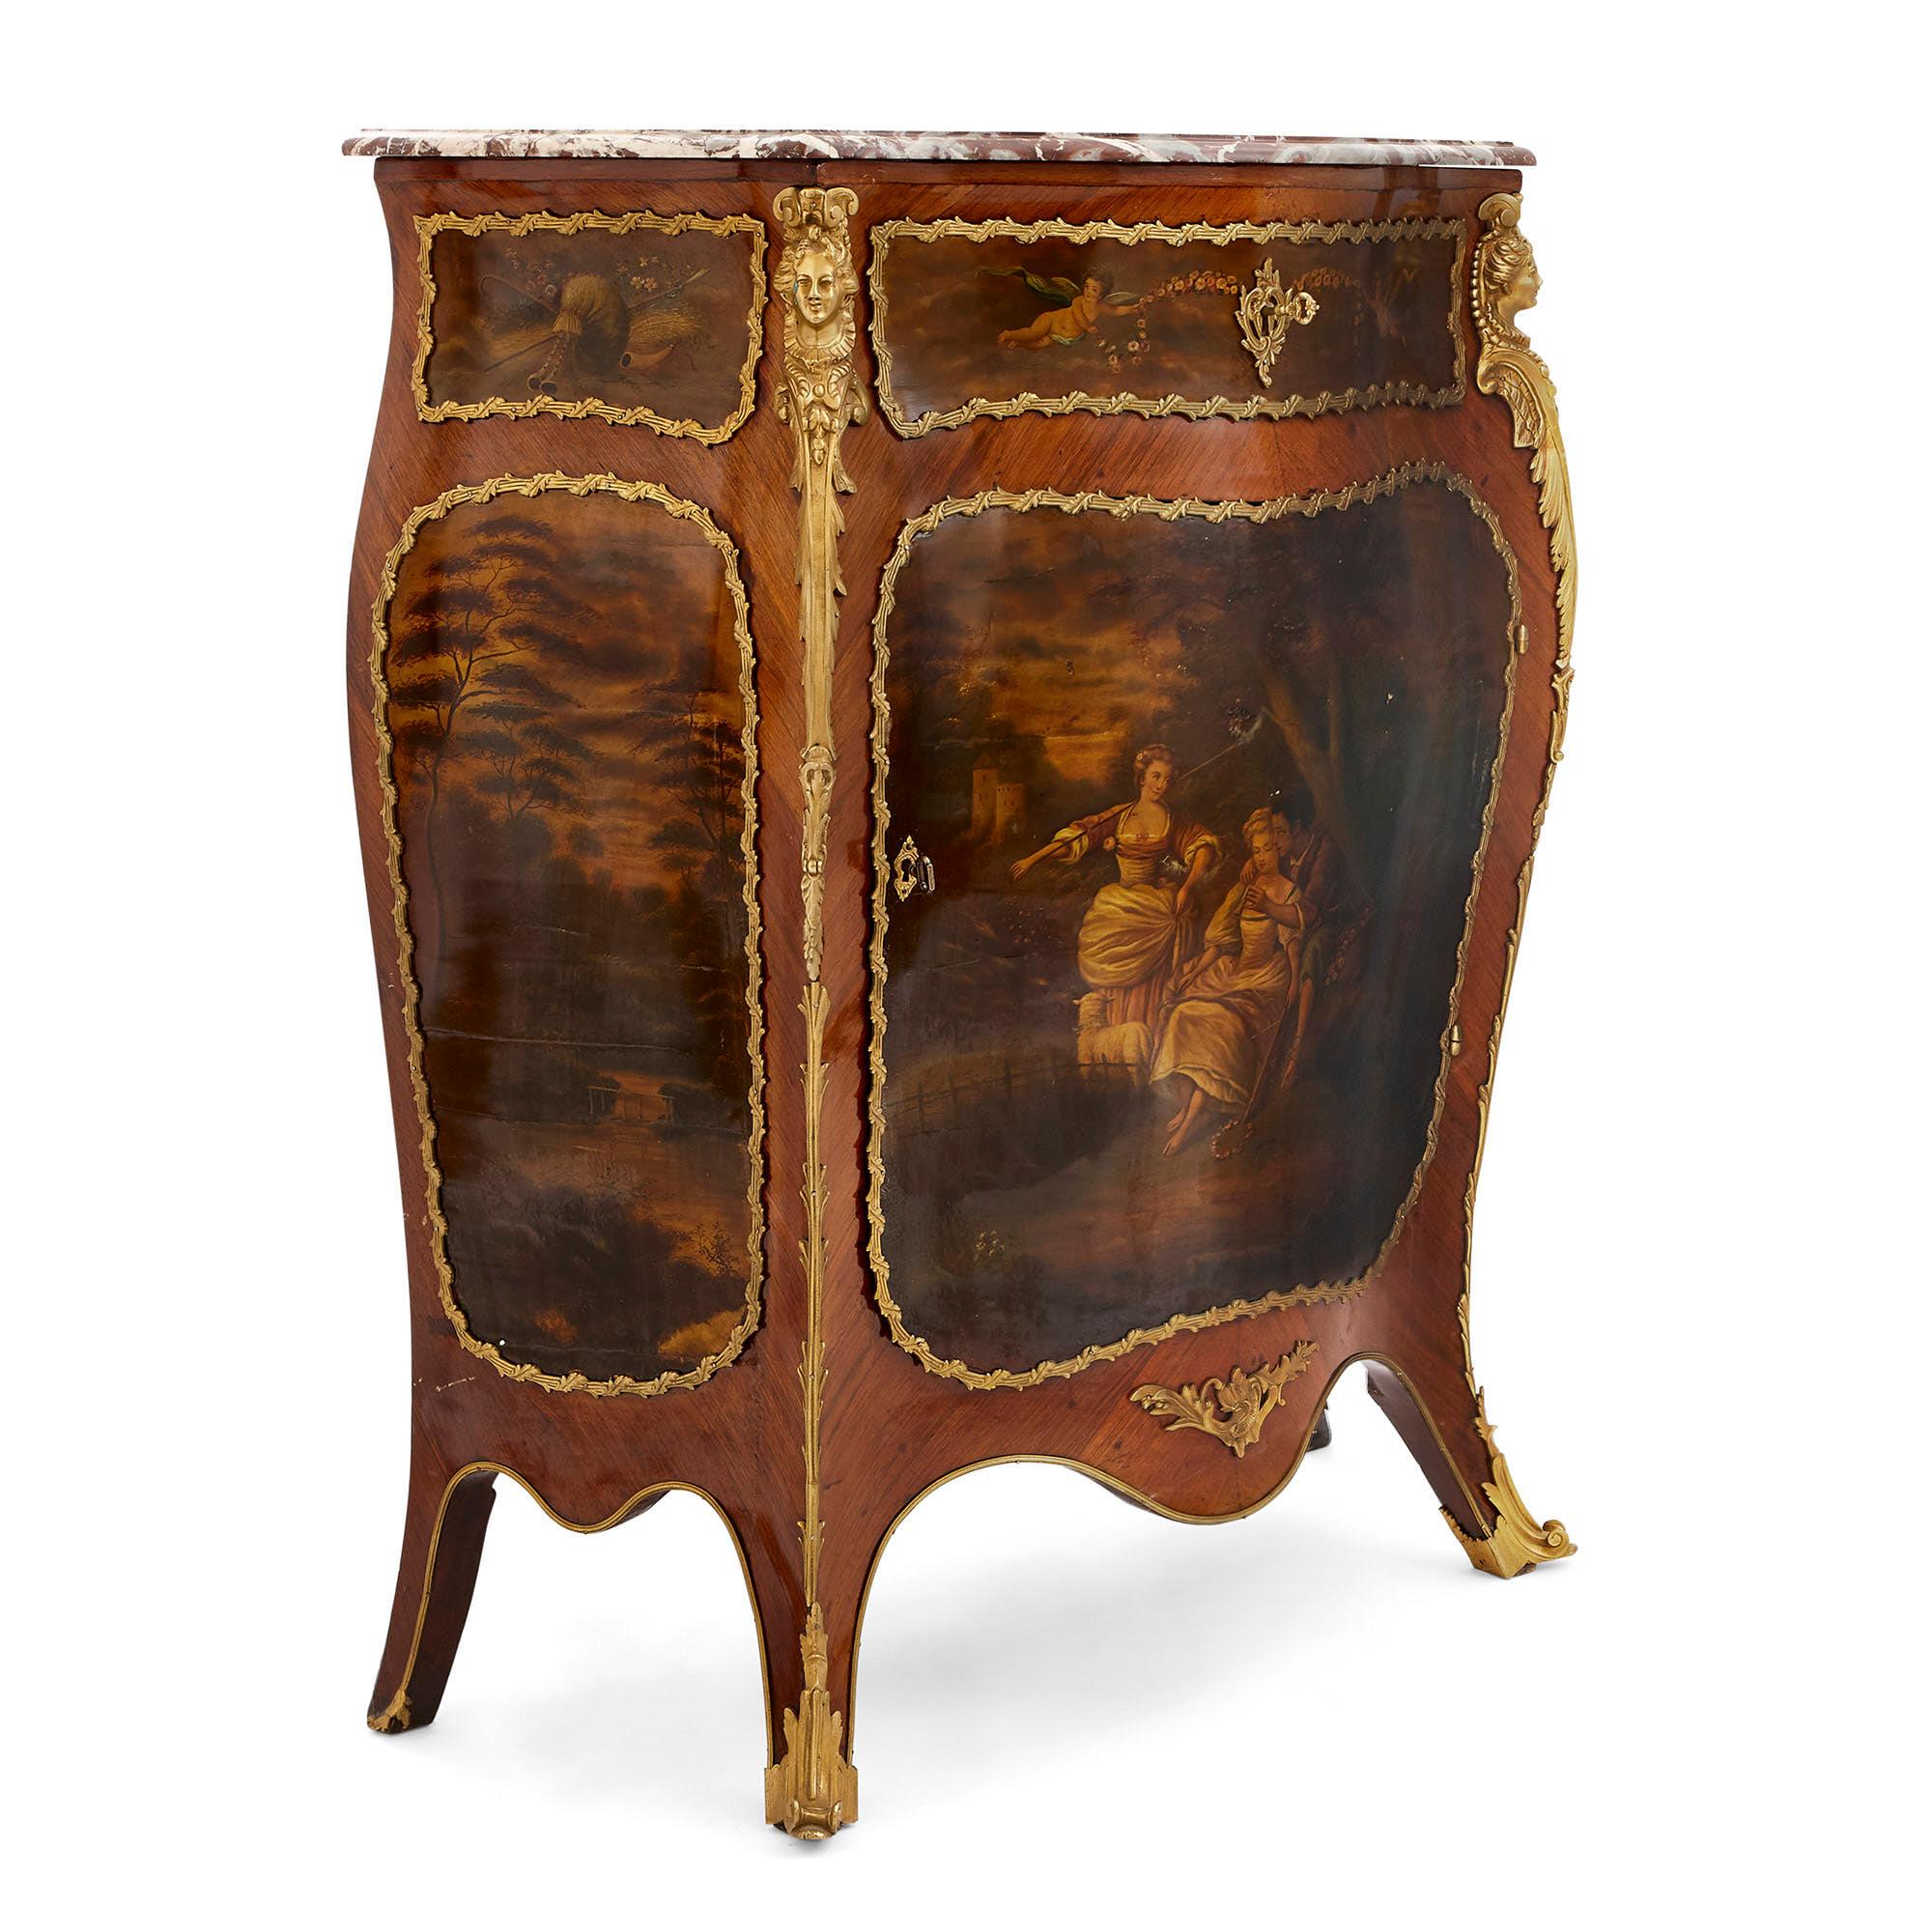 Dieser Schrank aus Königsholz ist ein exquisites antikes französisches Möbelstück, das mit schönen Martine-Paneelen verziert ist. Vernis Martin ist eine Art von Lackimitation, die im 18. Jahrhundert in Mode kam. Die Technik wurde von der Familie